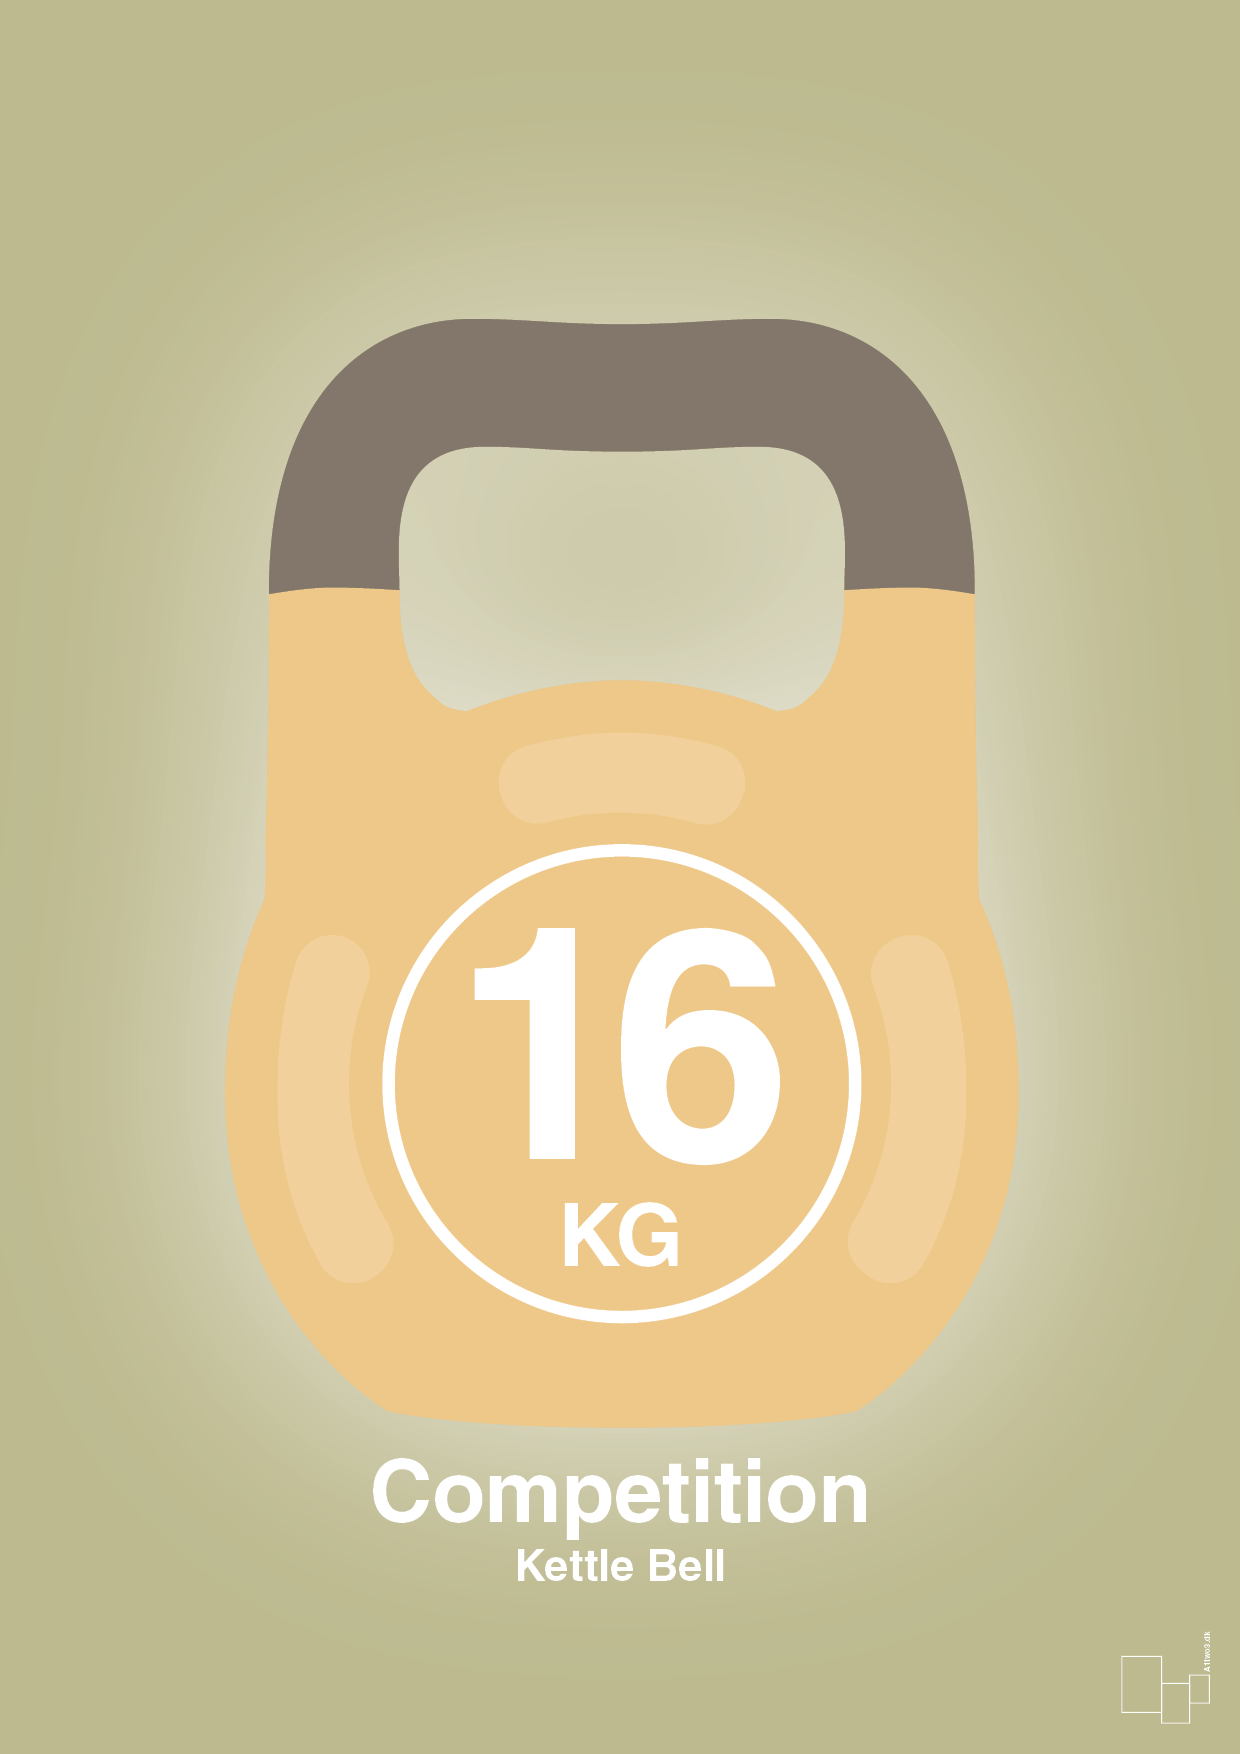 kettle bell 16 kg - competition color - Plakat med Grafik i Back to Nature